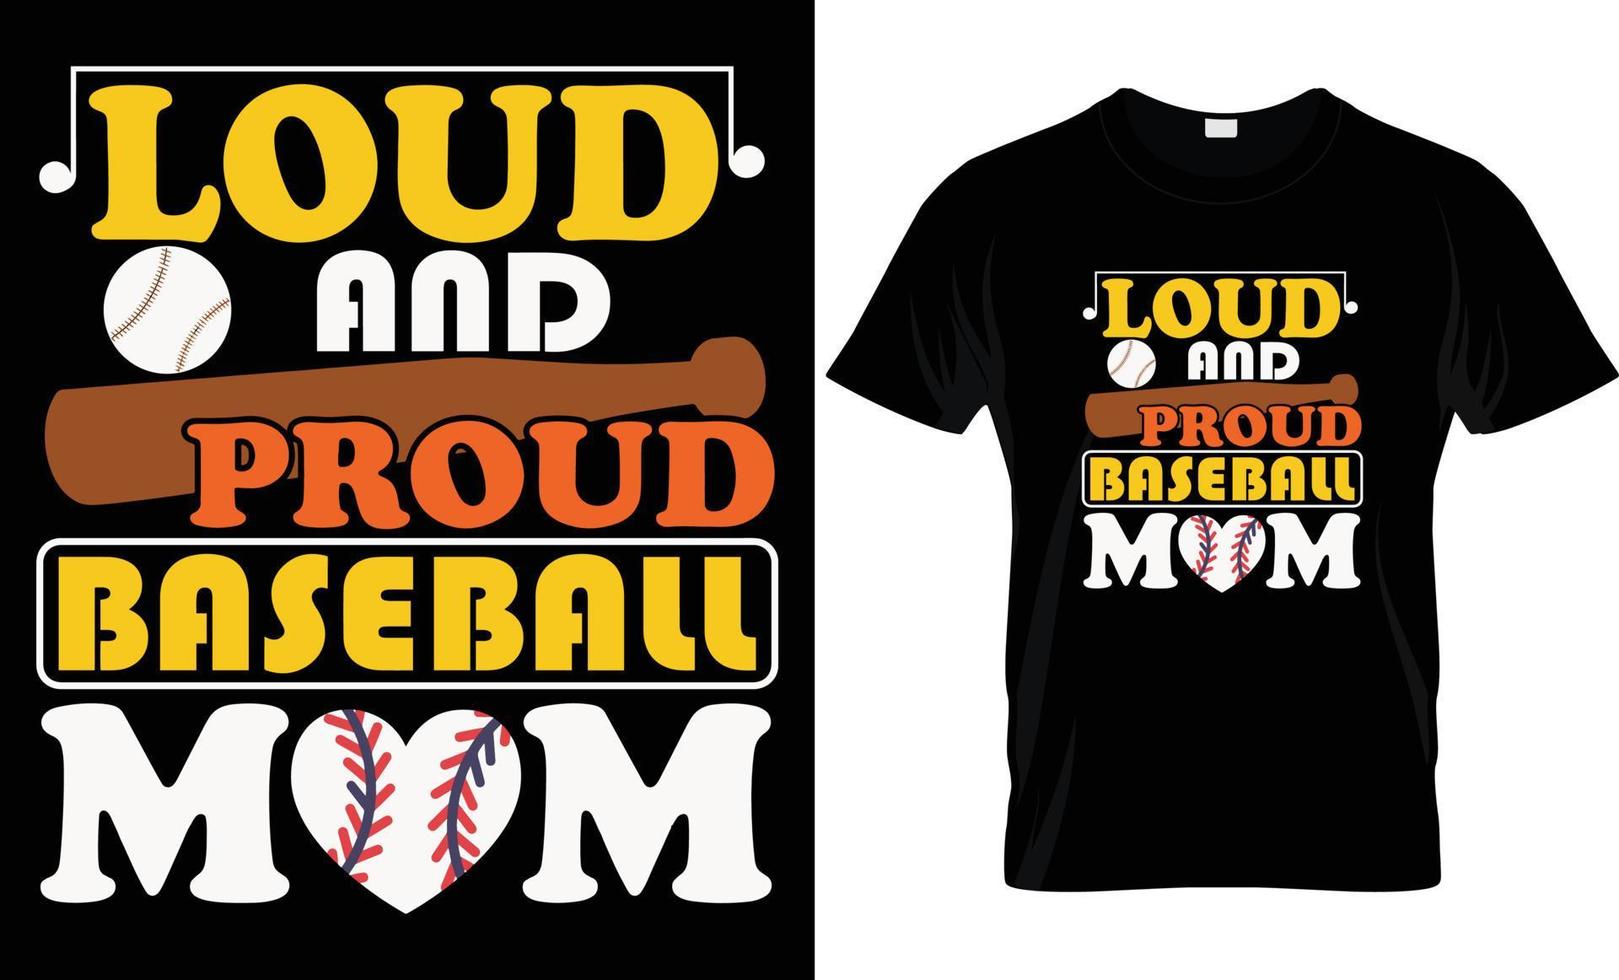 einstellen von Jahrgang T-Shirt Grafik Entwürfe, kreativ drucken Briefmarken, Baseball Typografie Embleme, Sport Logos, Vektor